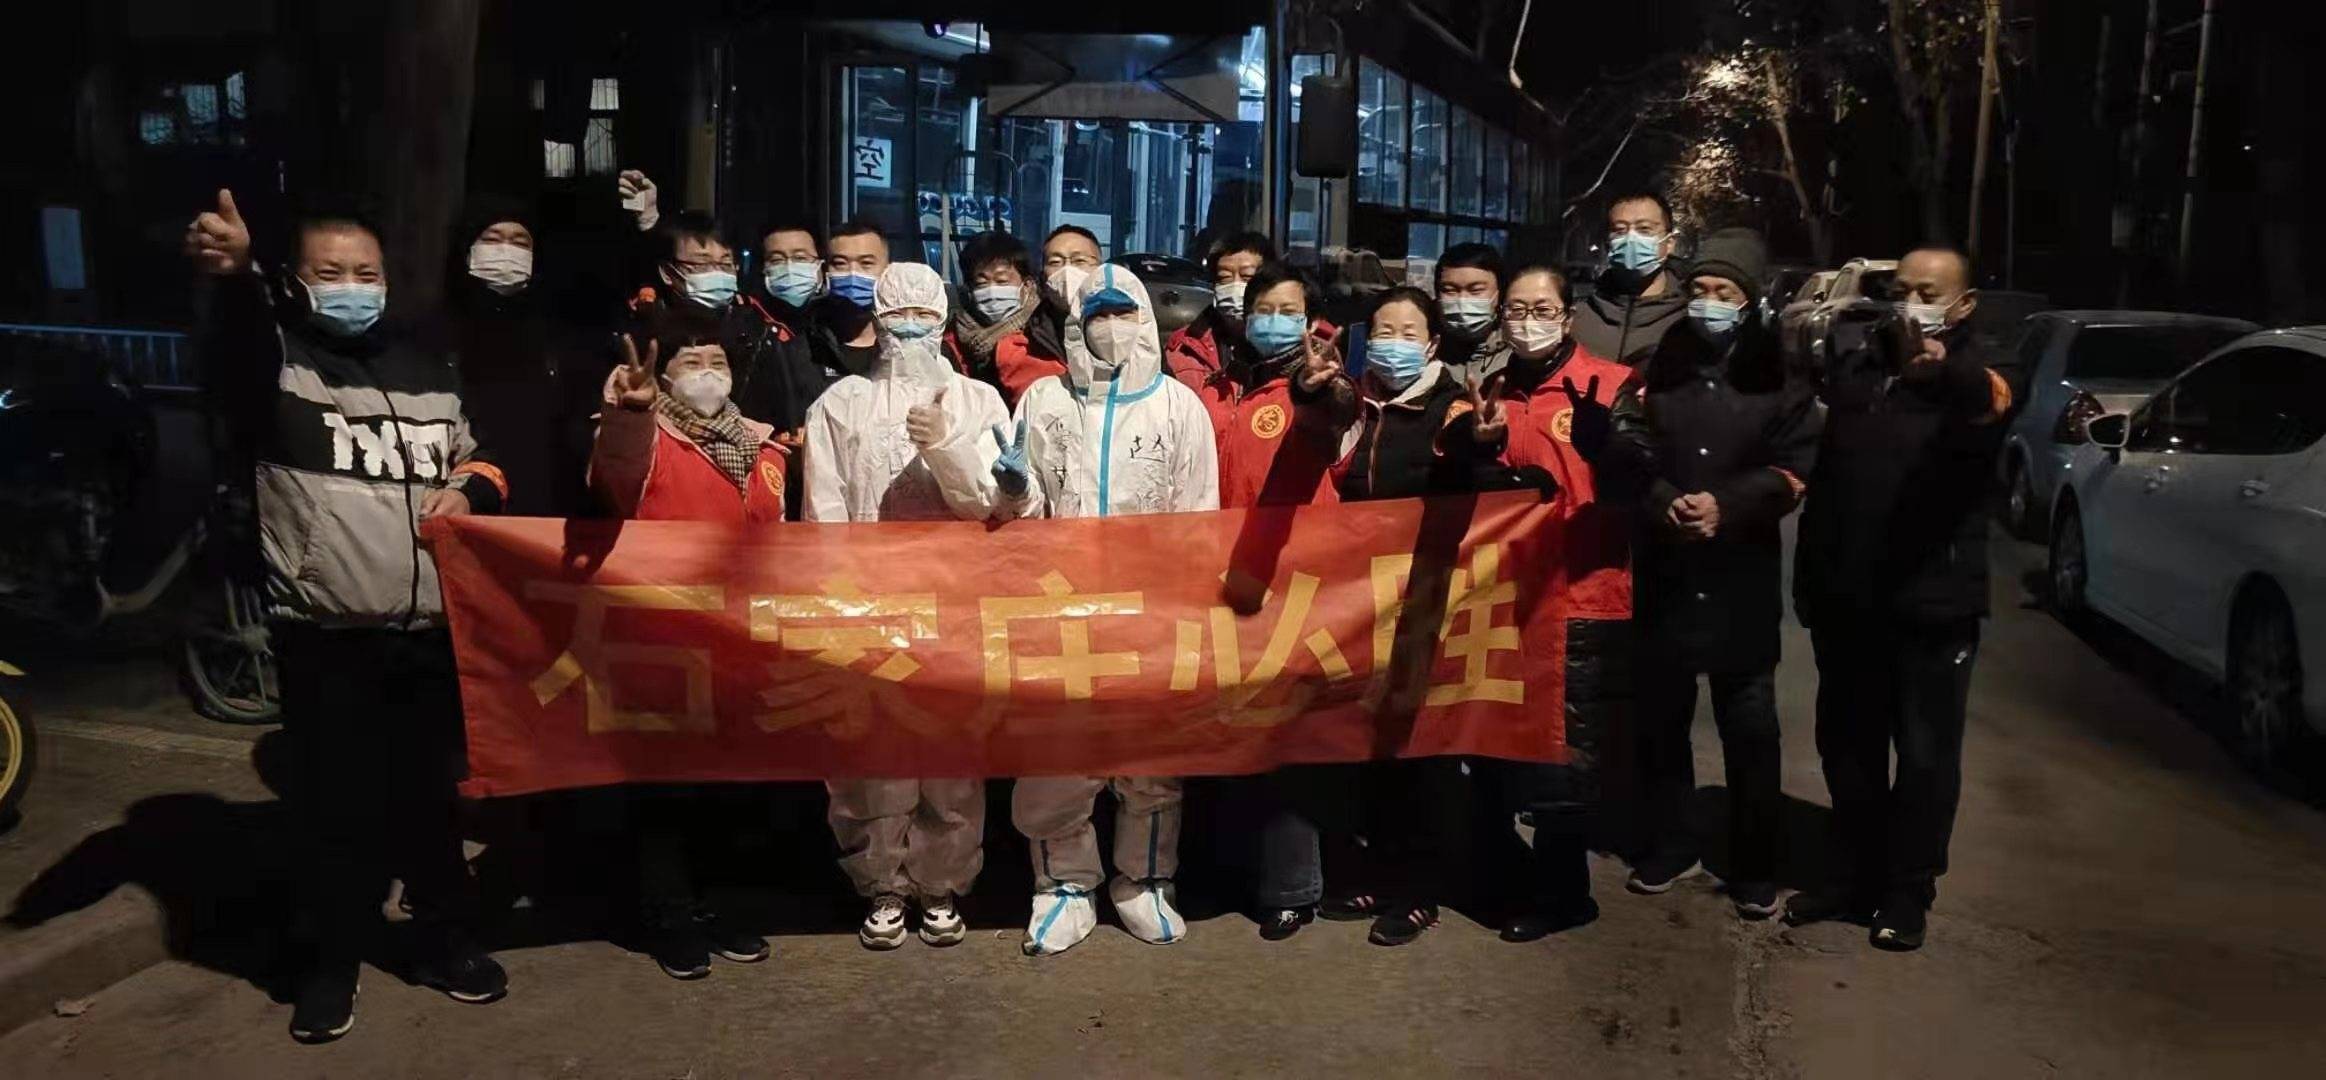 中國人保財險石家莊市分公司：百余名志愿者支援疫情防控一線